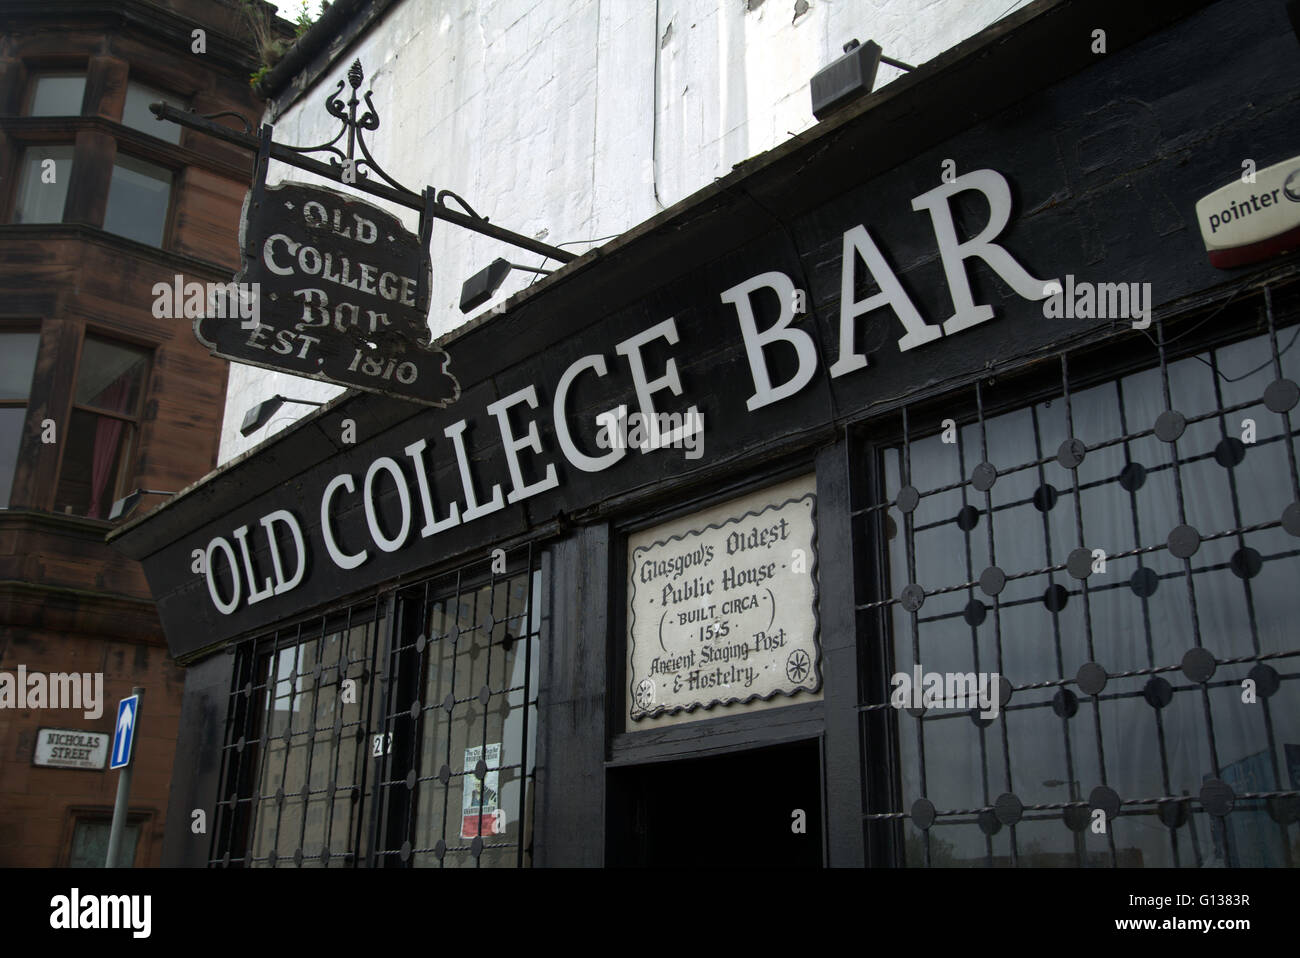 Più antico pub in Glasgow "vecchio collegio Bar' 1515 sul vecchio high street Glasgow, Scotland, Regno Unito Foto Stock